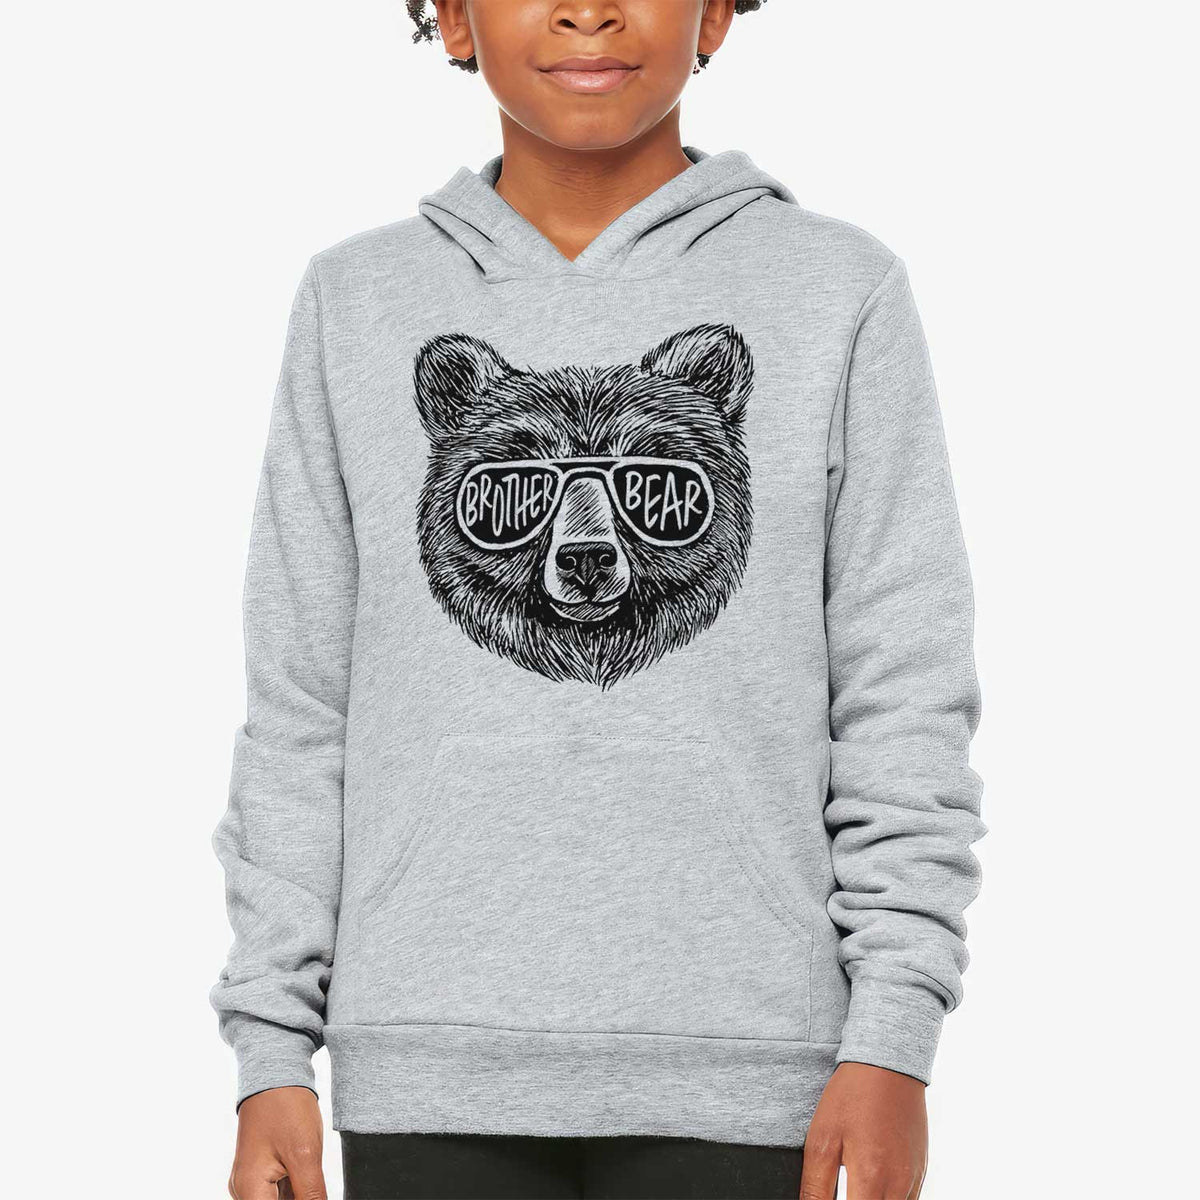 Brother Bear - Youth Hoodie Sweatshirt